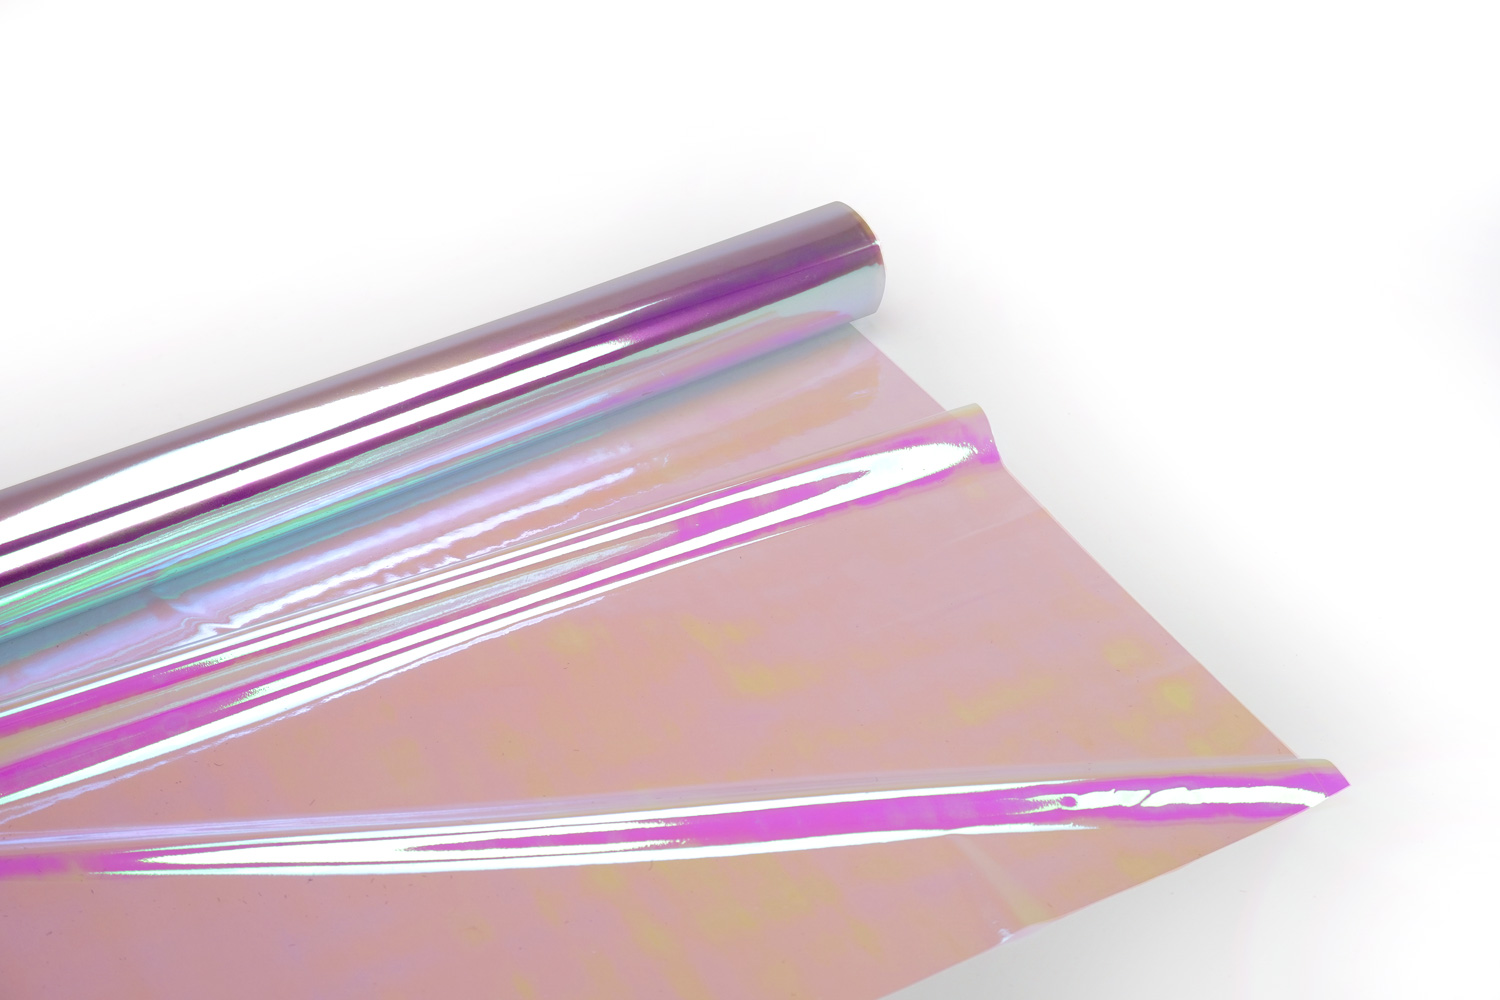 SUNICE – Film autocollant irisé violet, 60x20 pouces, emballage en